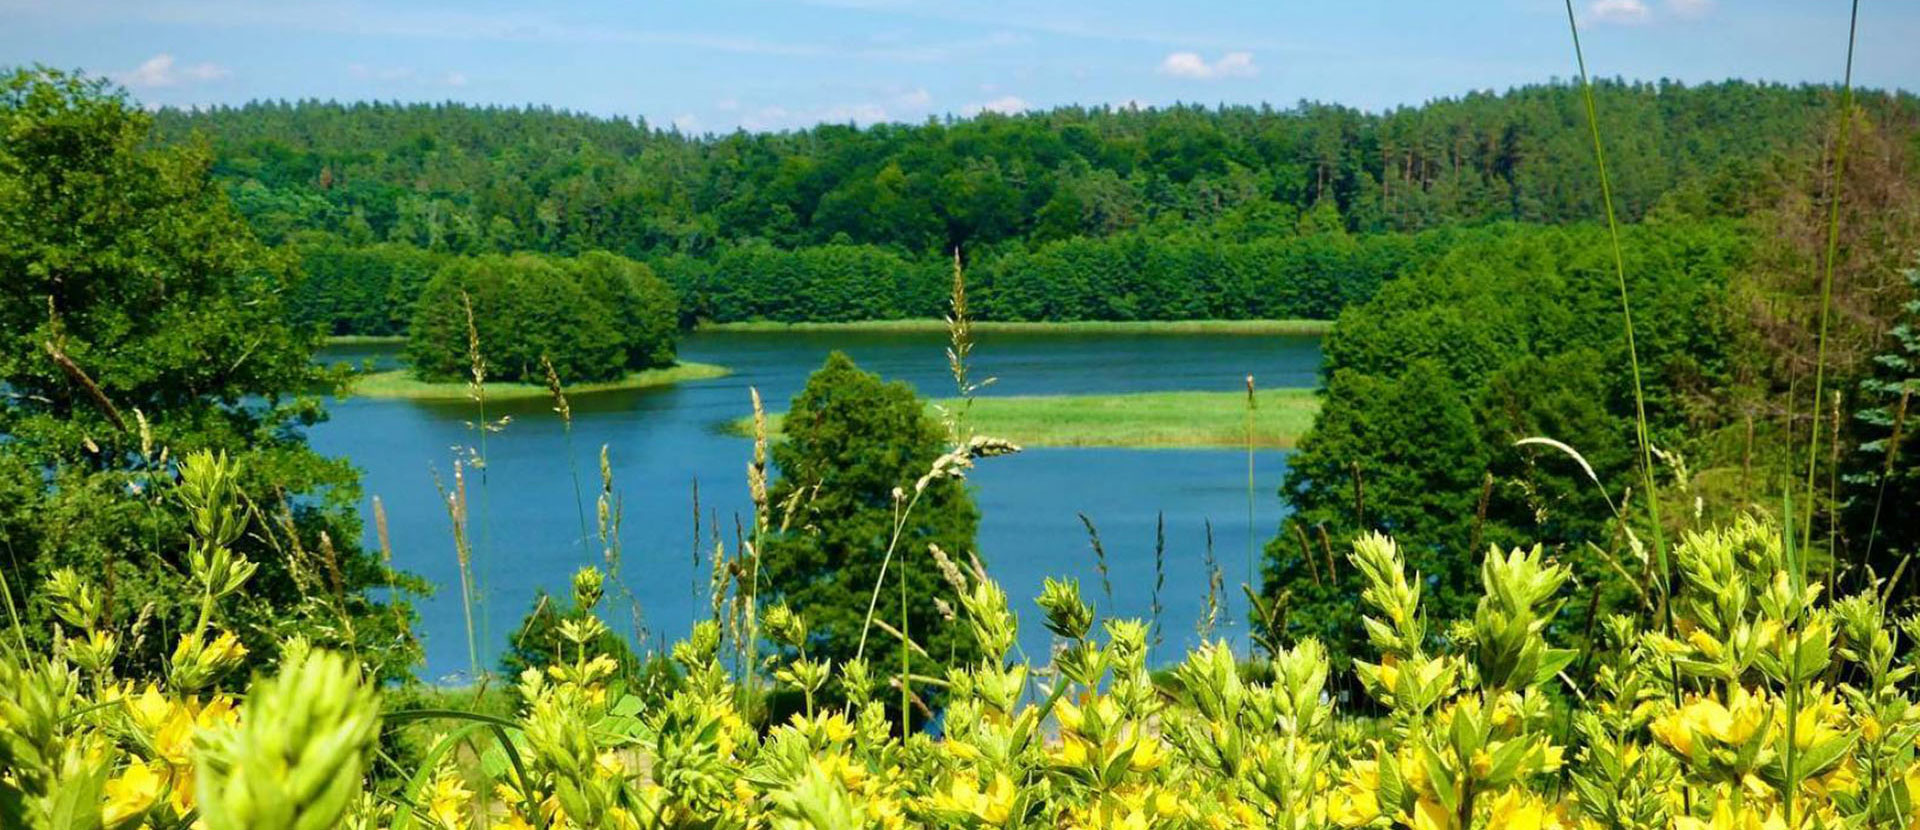 Zdjęcie okolicy, jezioro, zielona łąka.